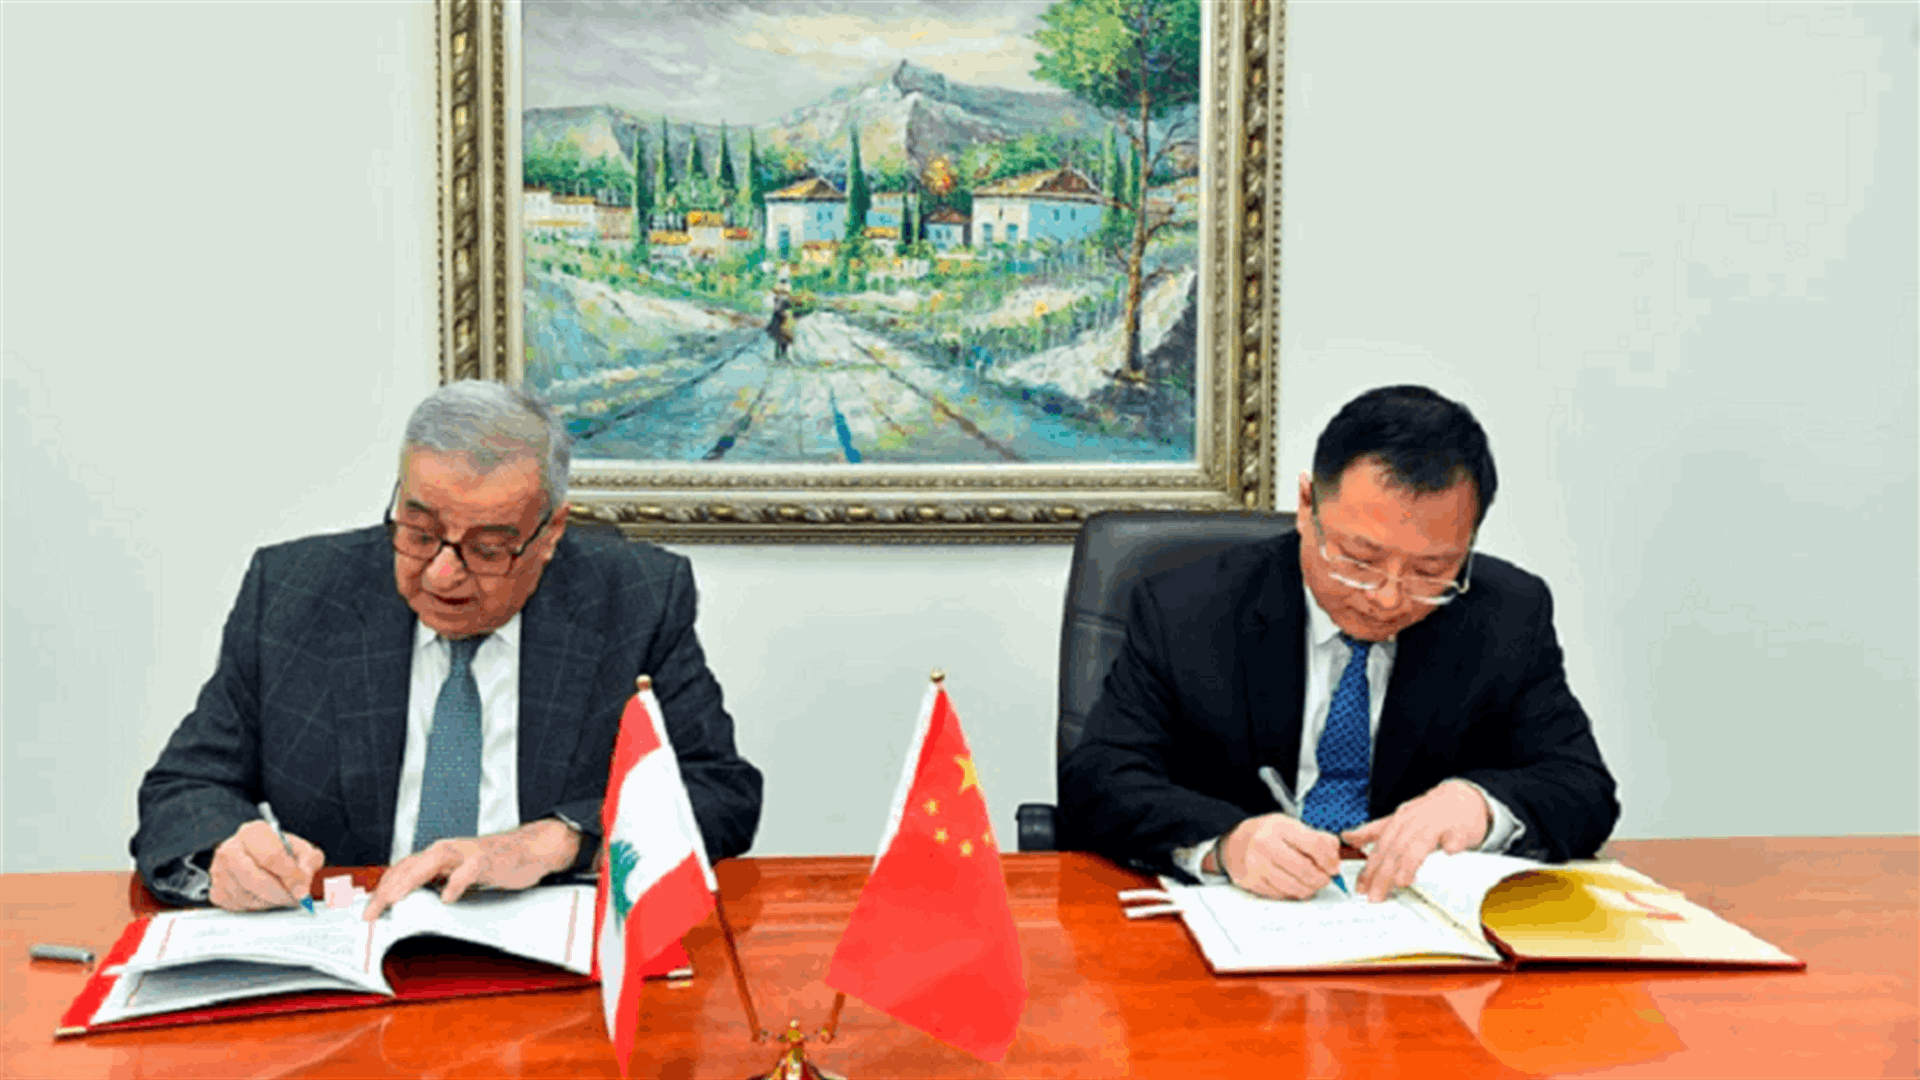 بو حبيب وقع وسفير الصين اتفاقية: مسألة اللاجئين تتطلب تضافر وتعاون المجتمع الدولي